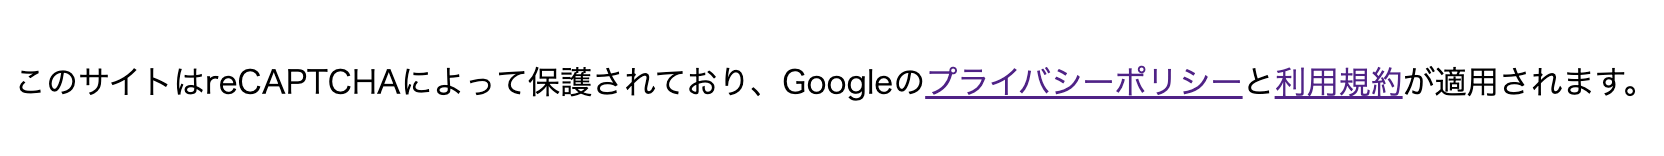 Googleのプライバシーポリシーと利用規約へのリンクのプレビュー表示画像